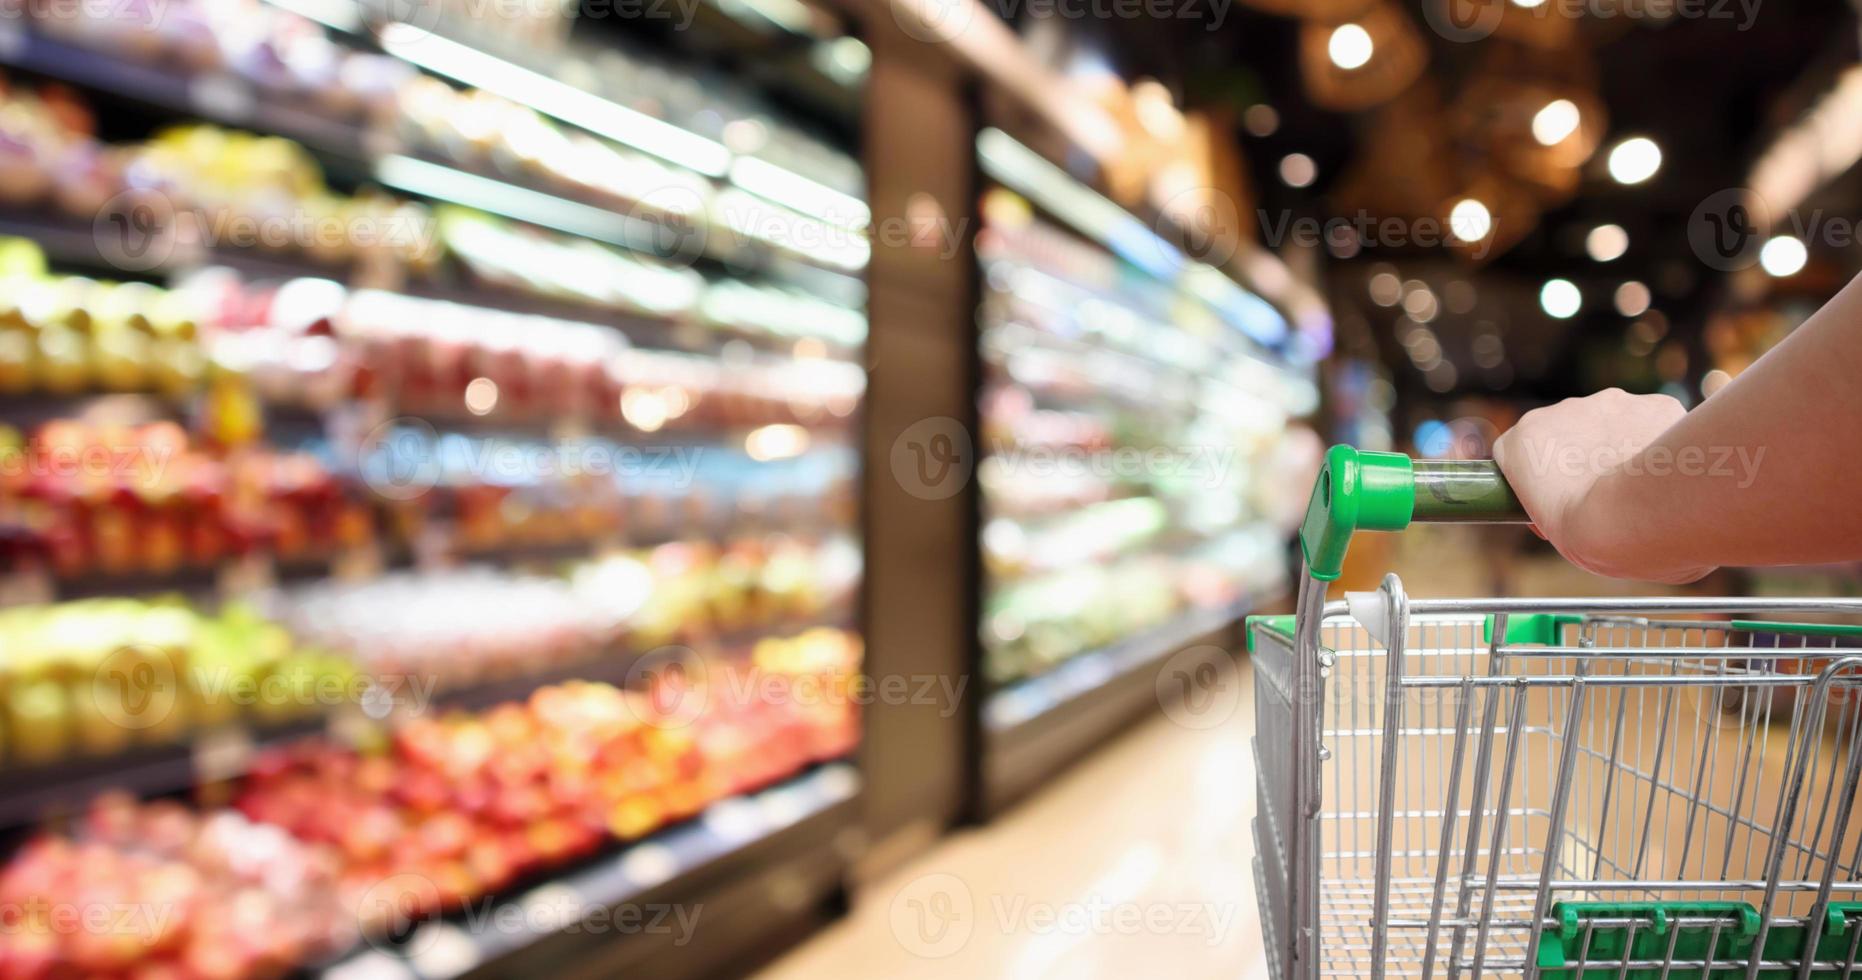 mão de mulher segura carrinho de compras de supermercado com borrão abstrato frutas e vegetais orgânicos nas prateleiras na mercearia desfocado fundo claro bokeh foto